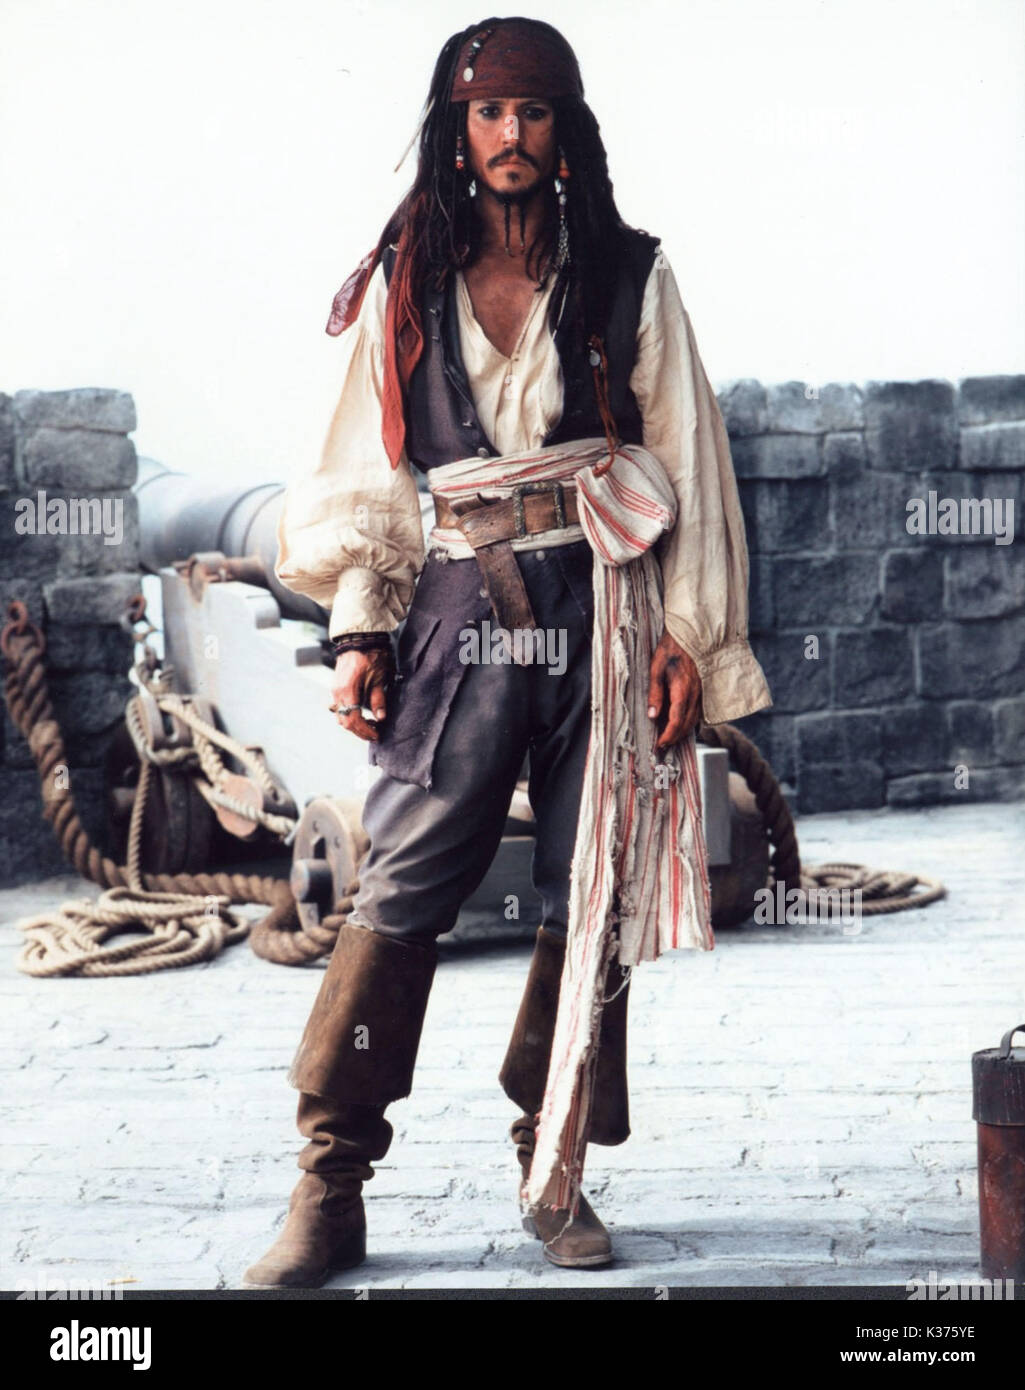 Pirati dei Caraibi: La maledizione della prima luna Johnny Depp un film di Walt Disney Foto Stock